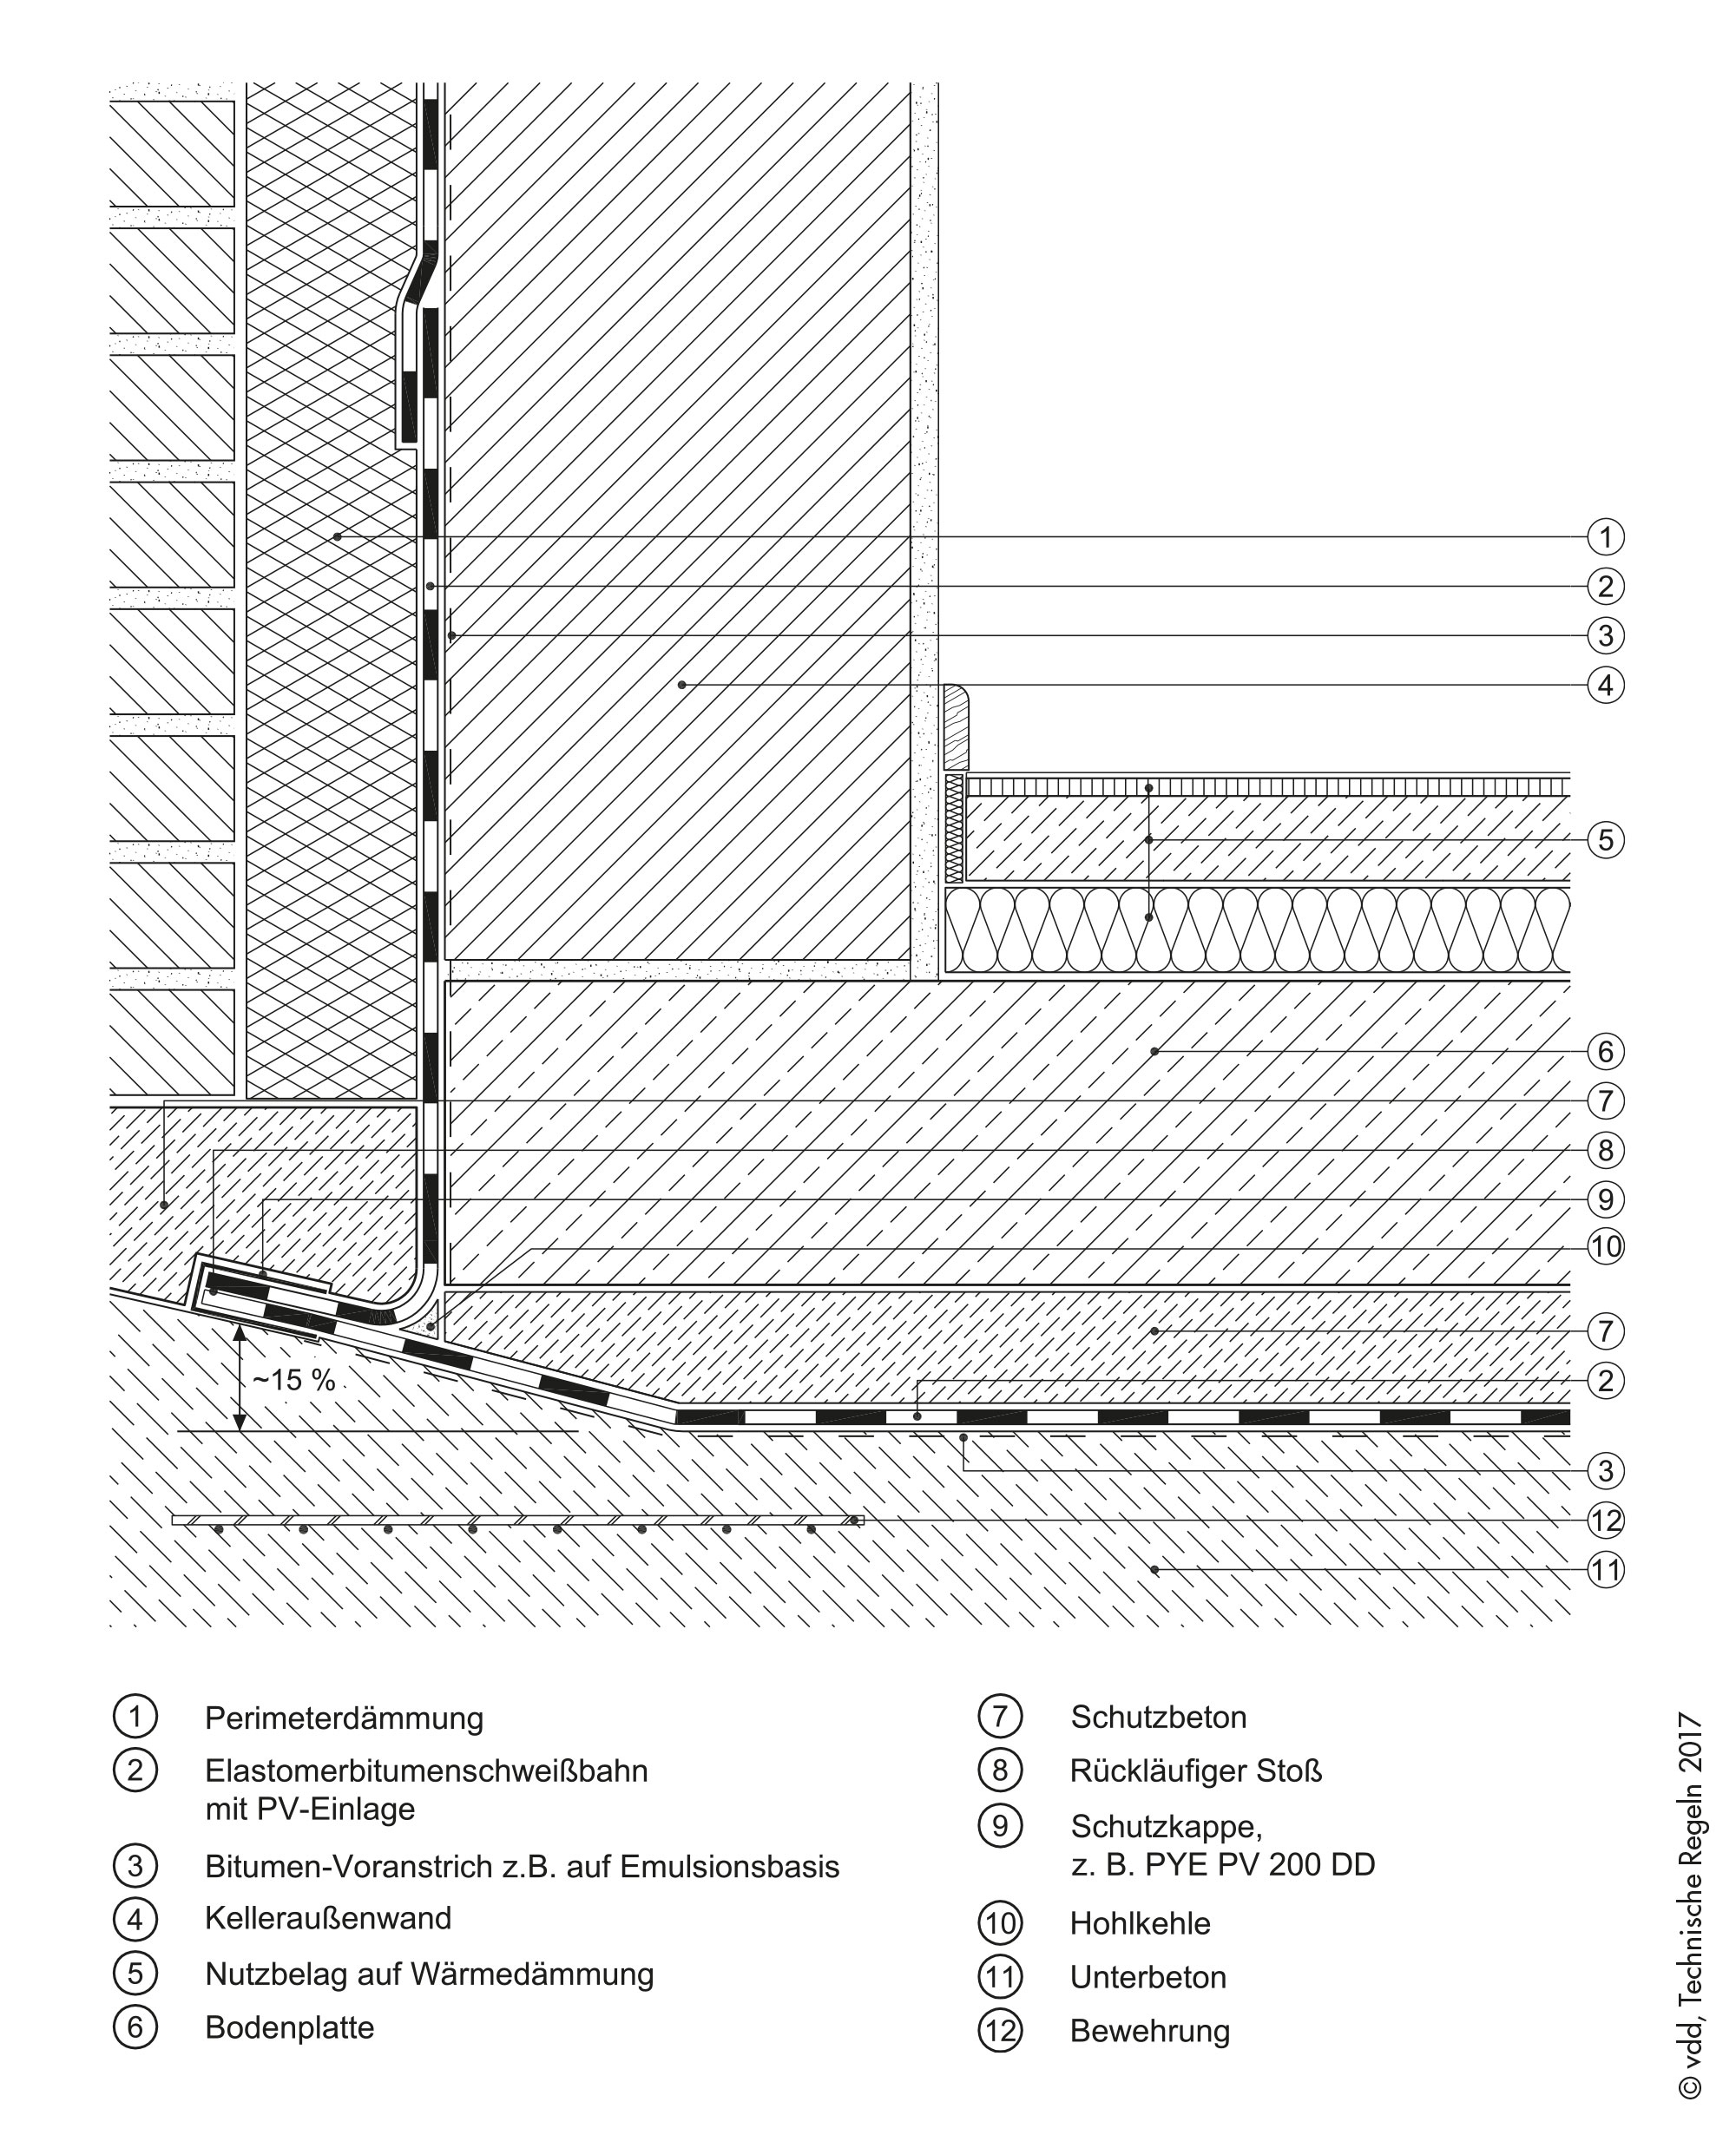 Abdichtung von erdberührten Bauteilen nach DIN 18533, Rückläufiger Stoß bei einlagiger Abdichtung, Wassereinwirkung: W2.1-E drückendes Wasser ≤ 3 m